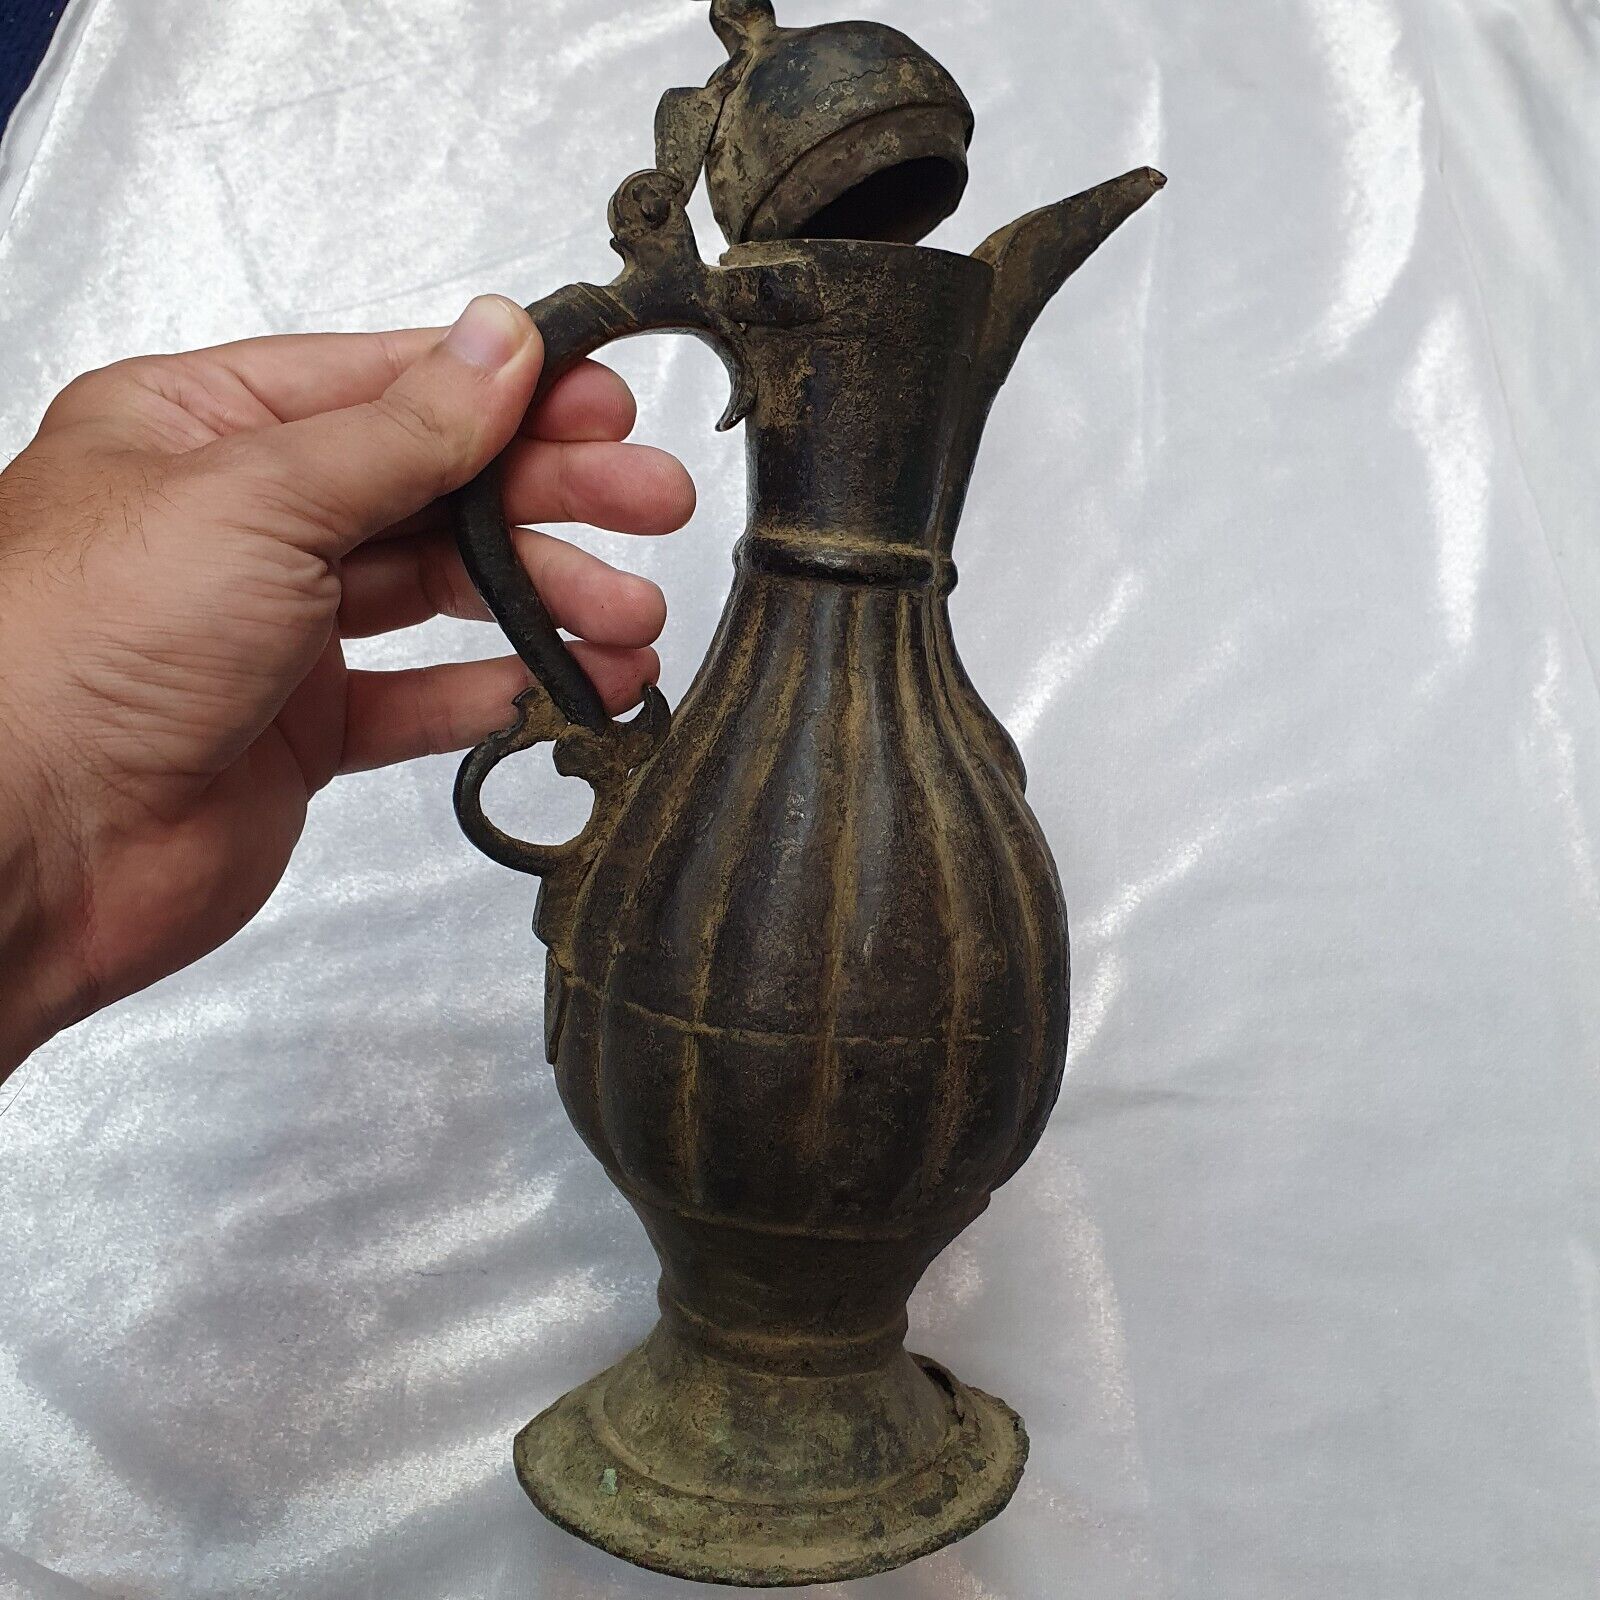 AA Antique Bronze jug Hand Carved Museum Quality Unique Tea Pot